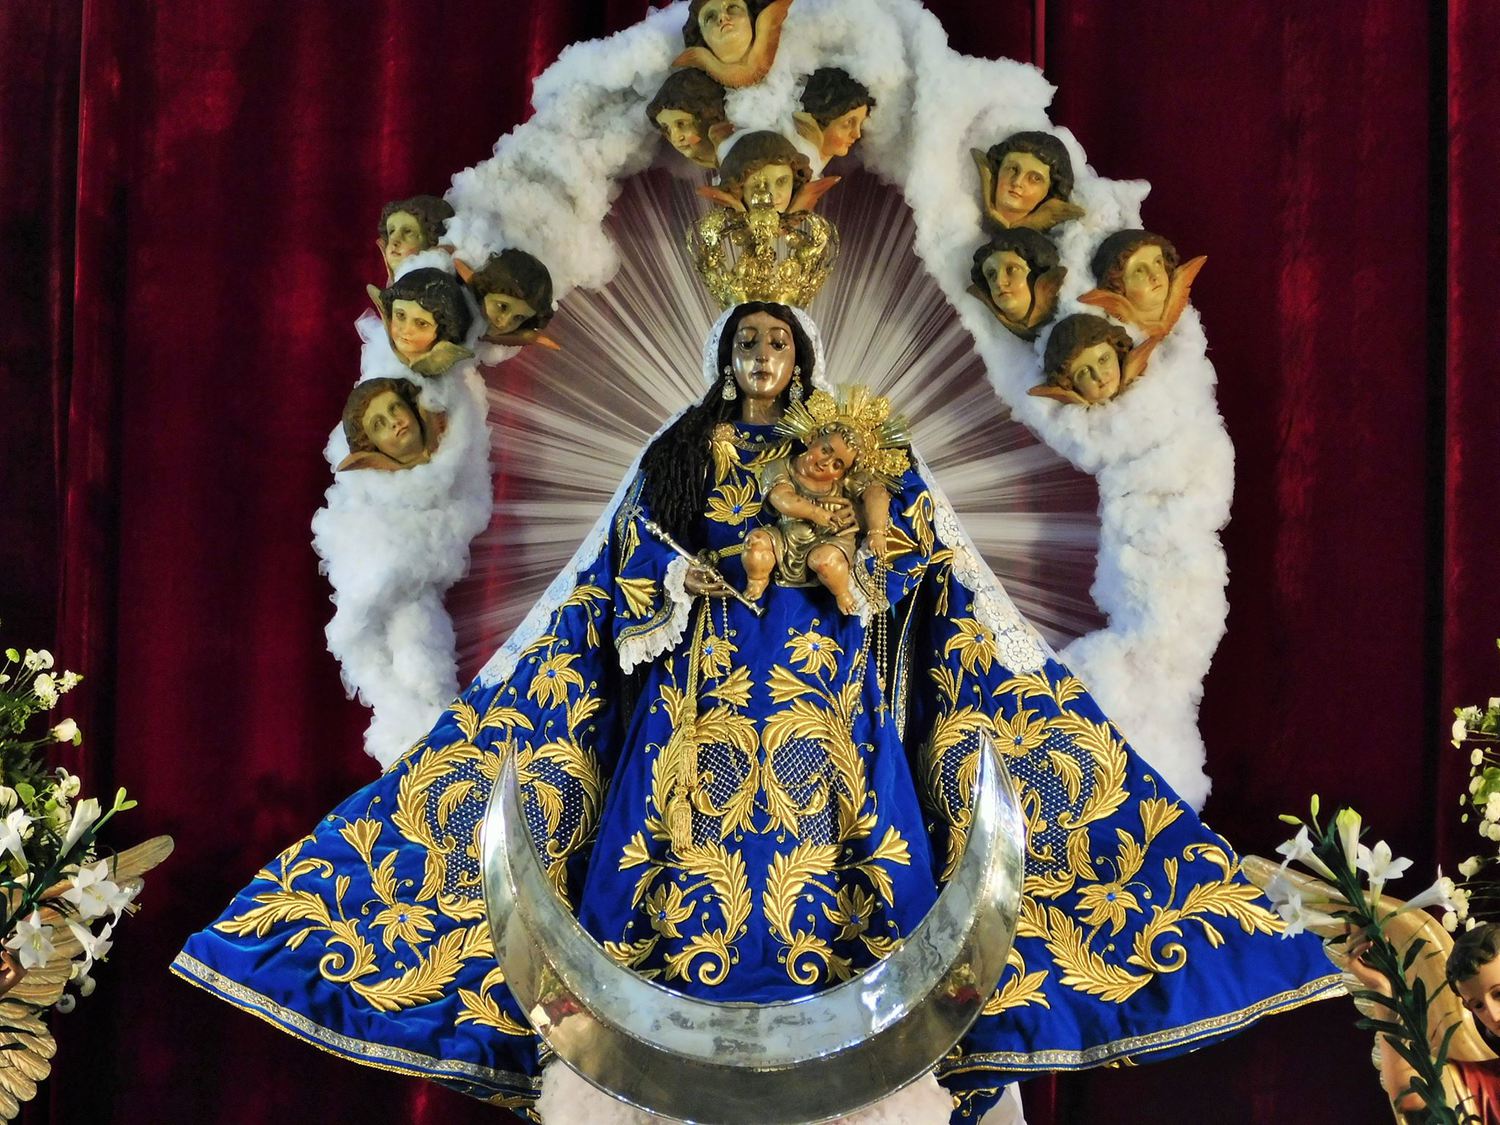 Virgen del Rosario, Reina y Madre de la República de Guatemala